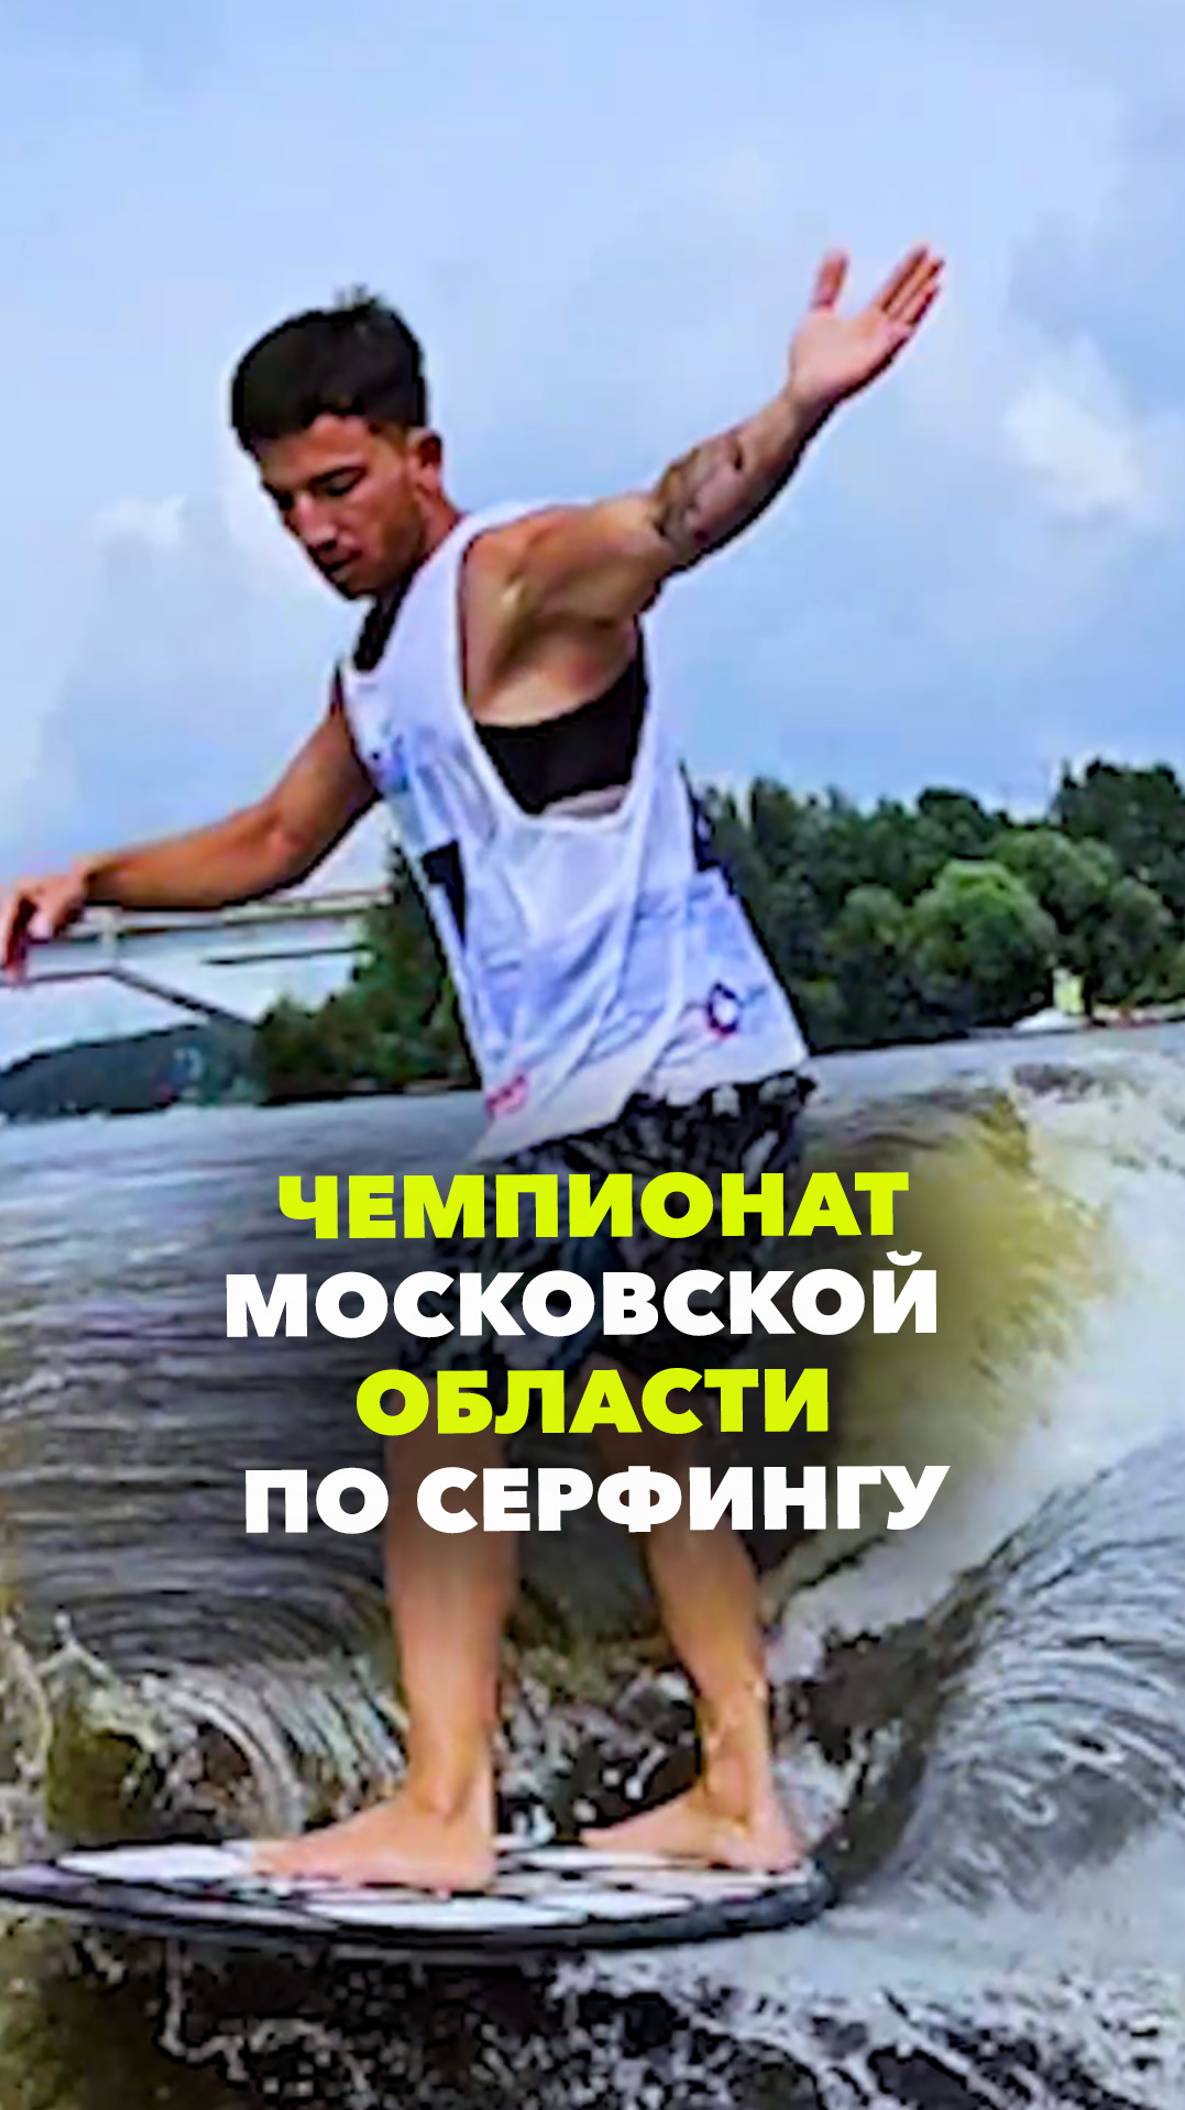 Чемпионат Московской области по серфингу в дисциплинах «вейксерфинг» и «вейкским»